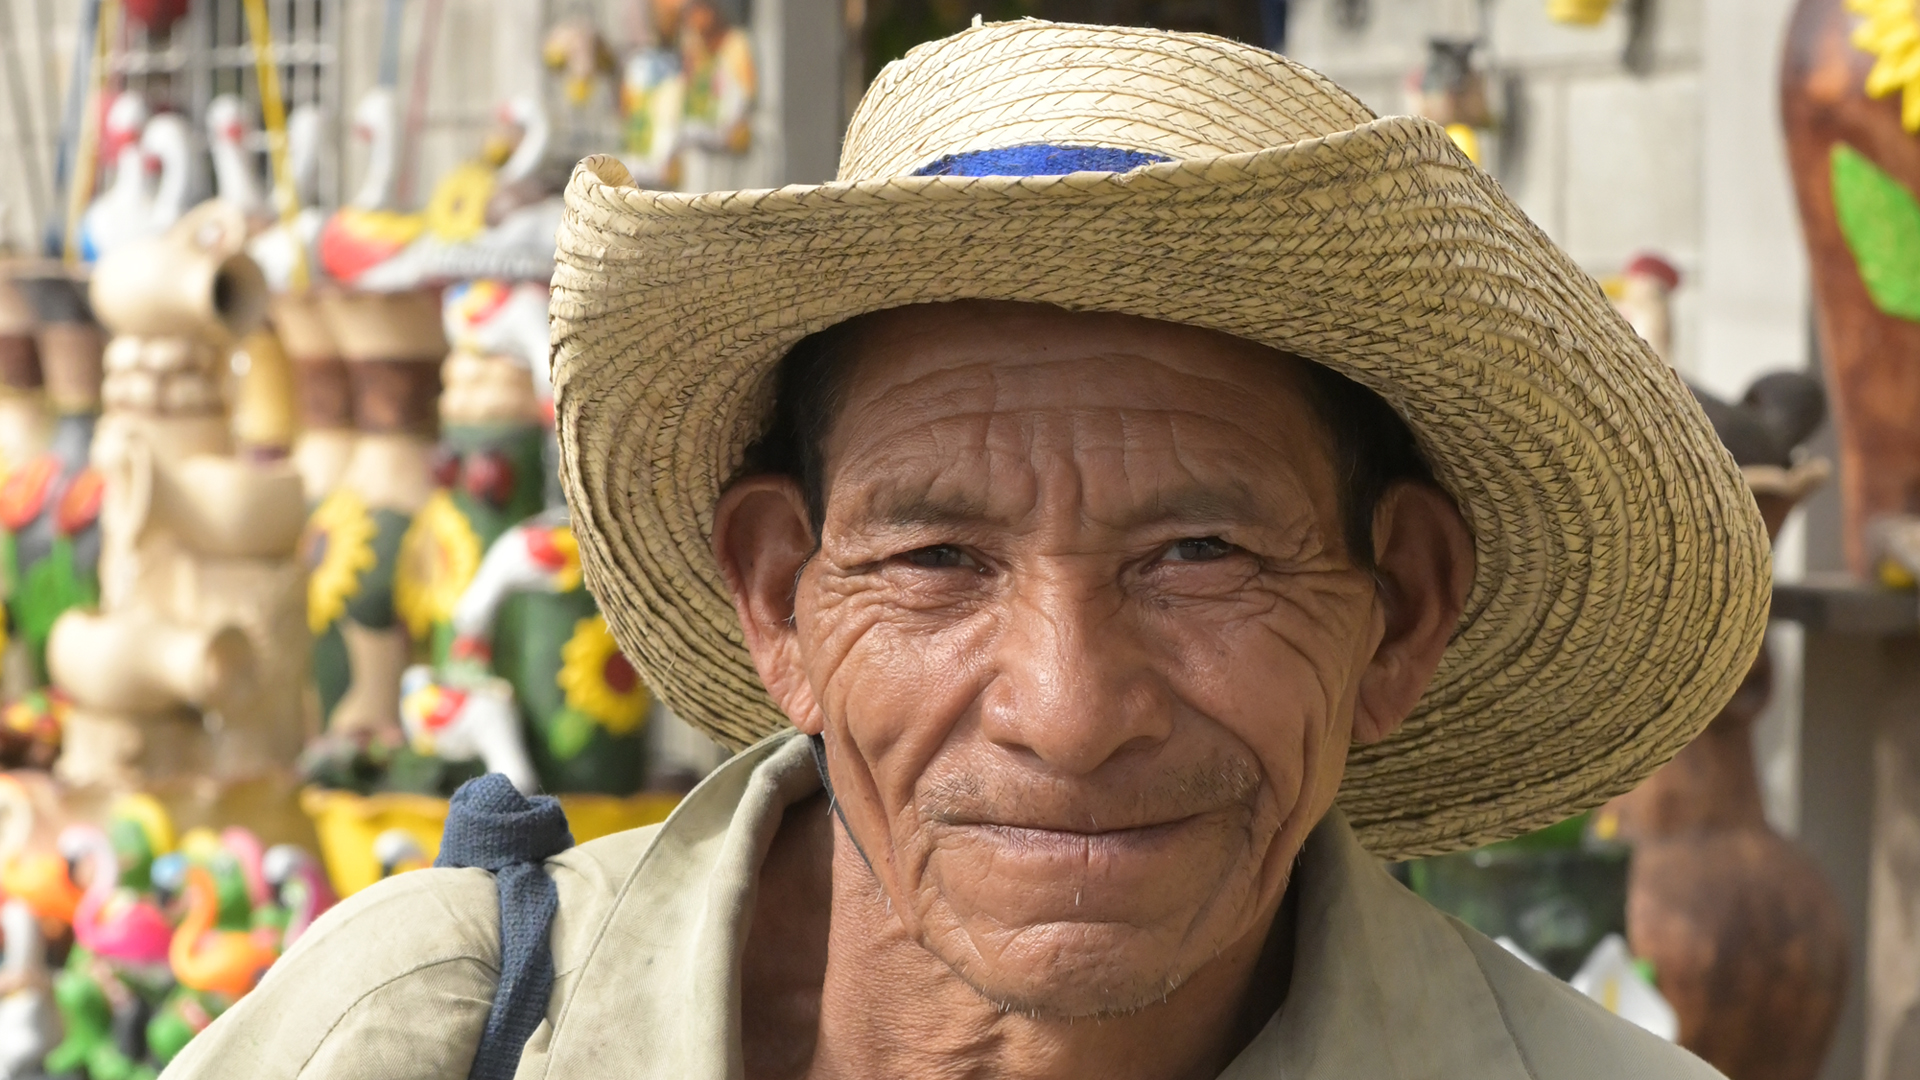 La migración de jóvenes a las ciudades conduce al envejecimiento de la población en las áreas rurales agrícolas con fuerte impacto en la fuerza laboral disponible (Fernando Calzada)